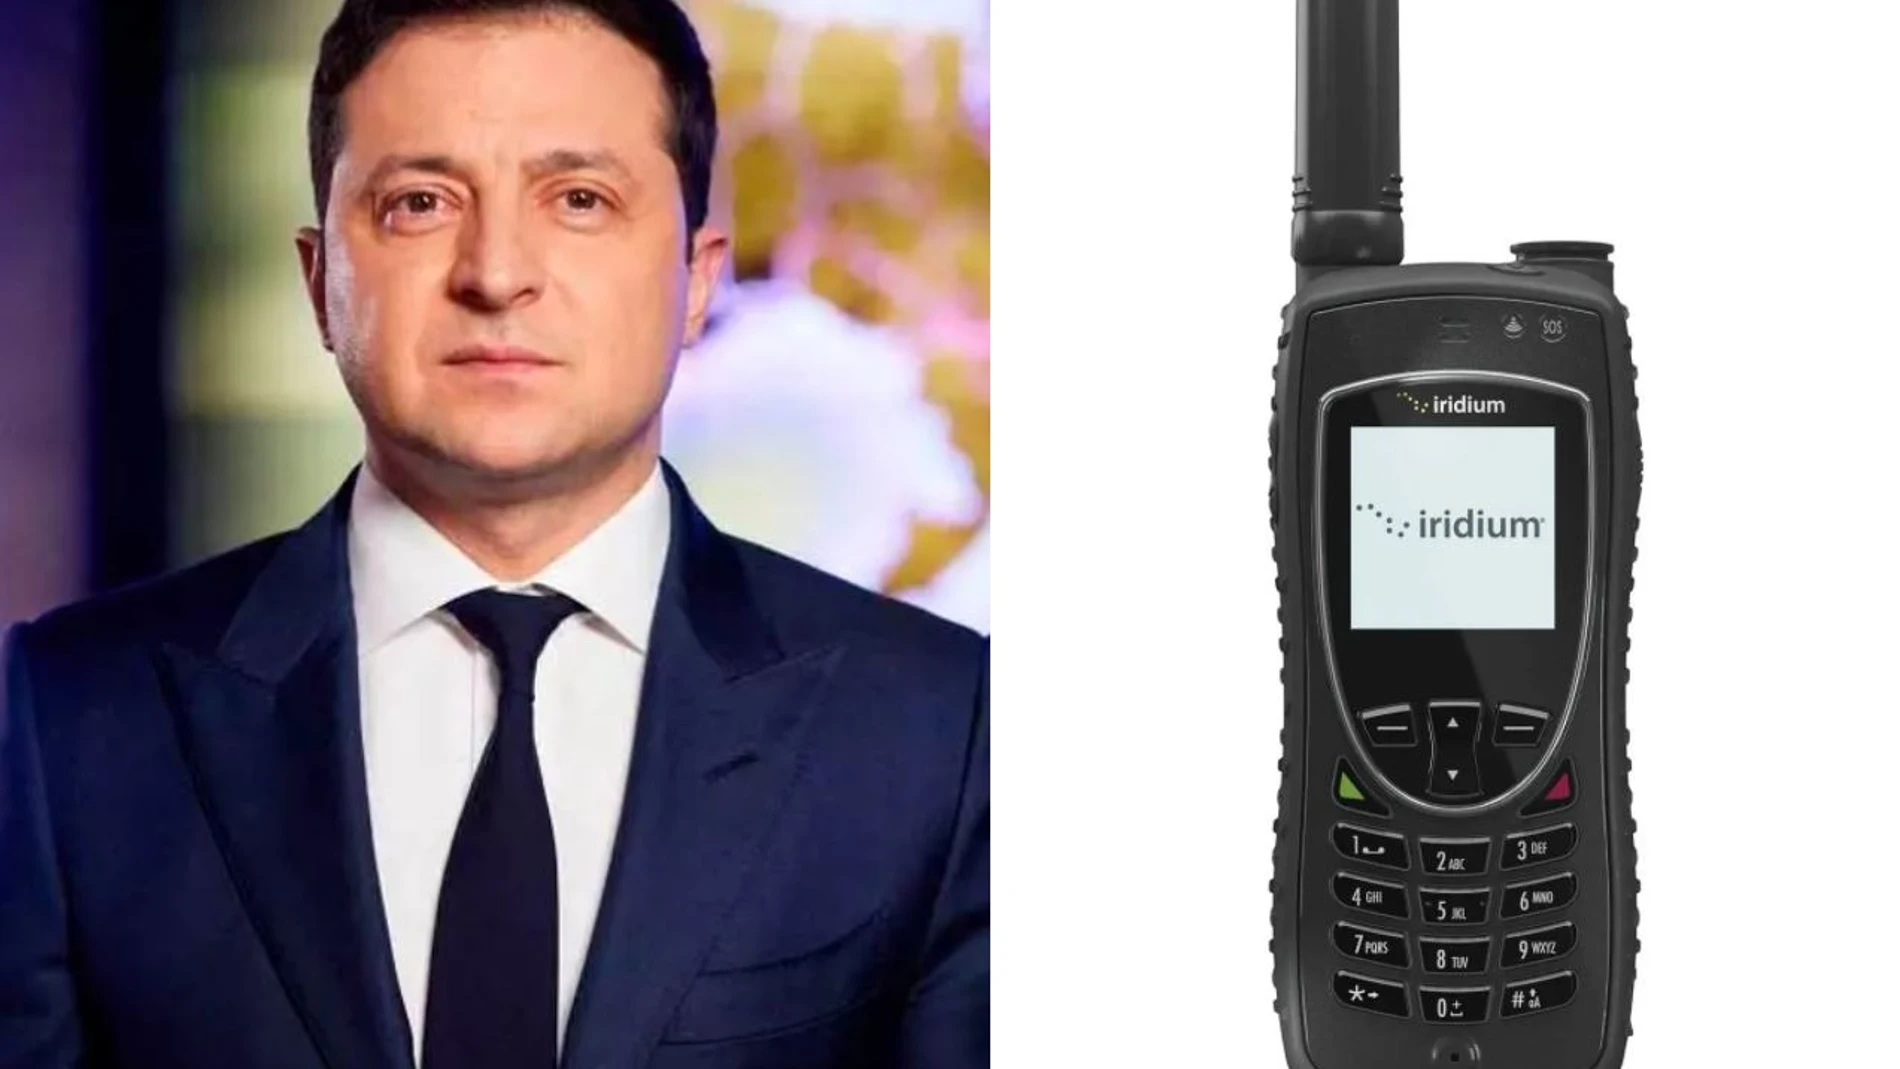 Según informó ‘CNN’, el Gobierno ucraniano cuenta actualmente con dos dispositivos de este tipo. Todo indica que debe tratarse del modelo Iridium 9575A